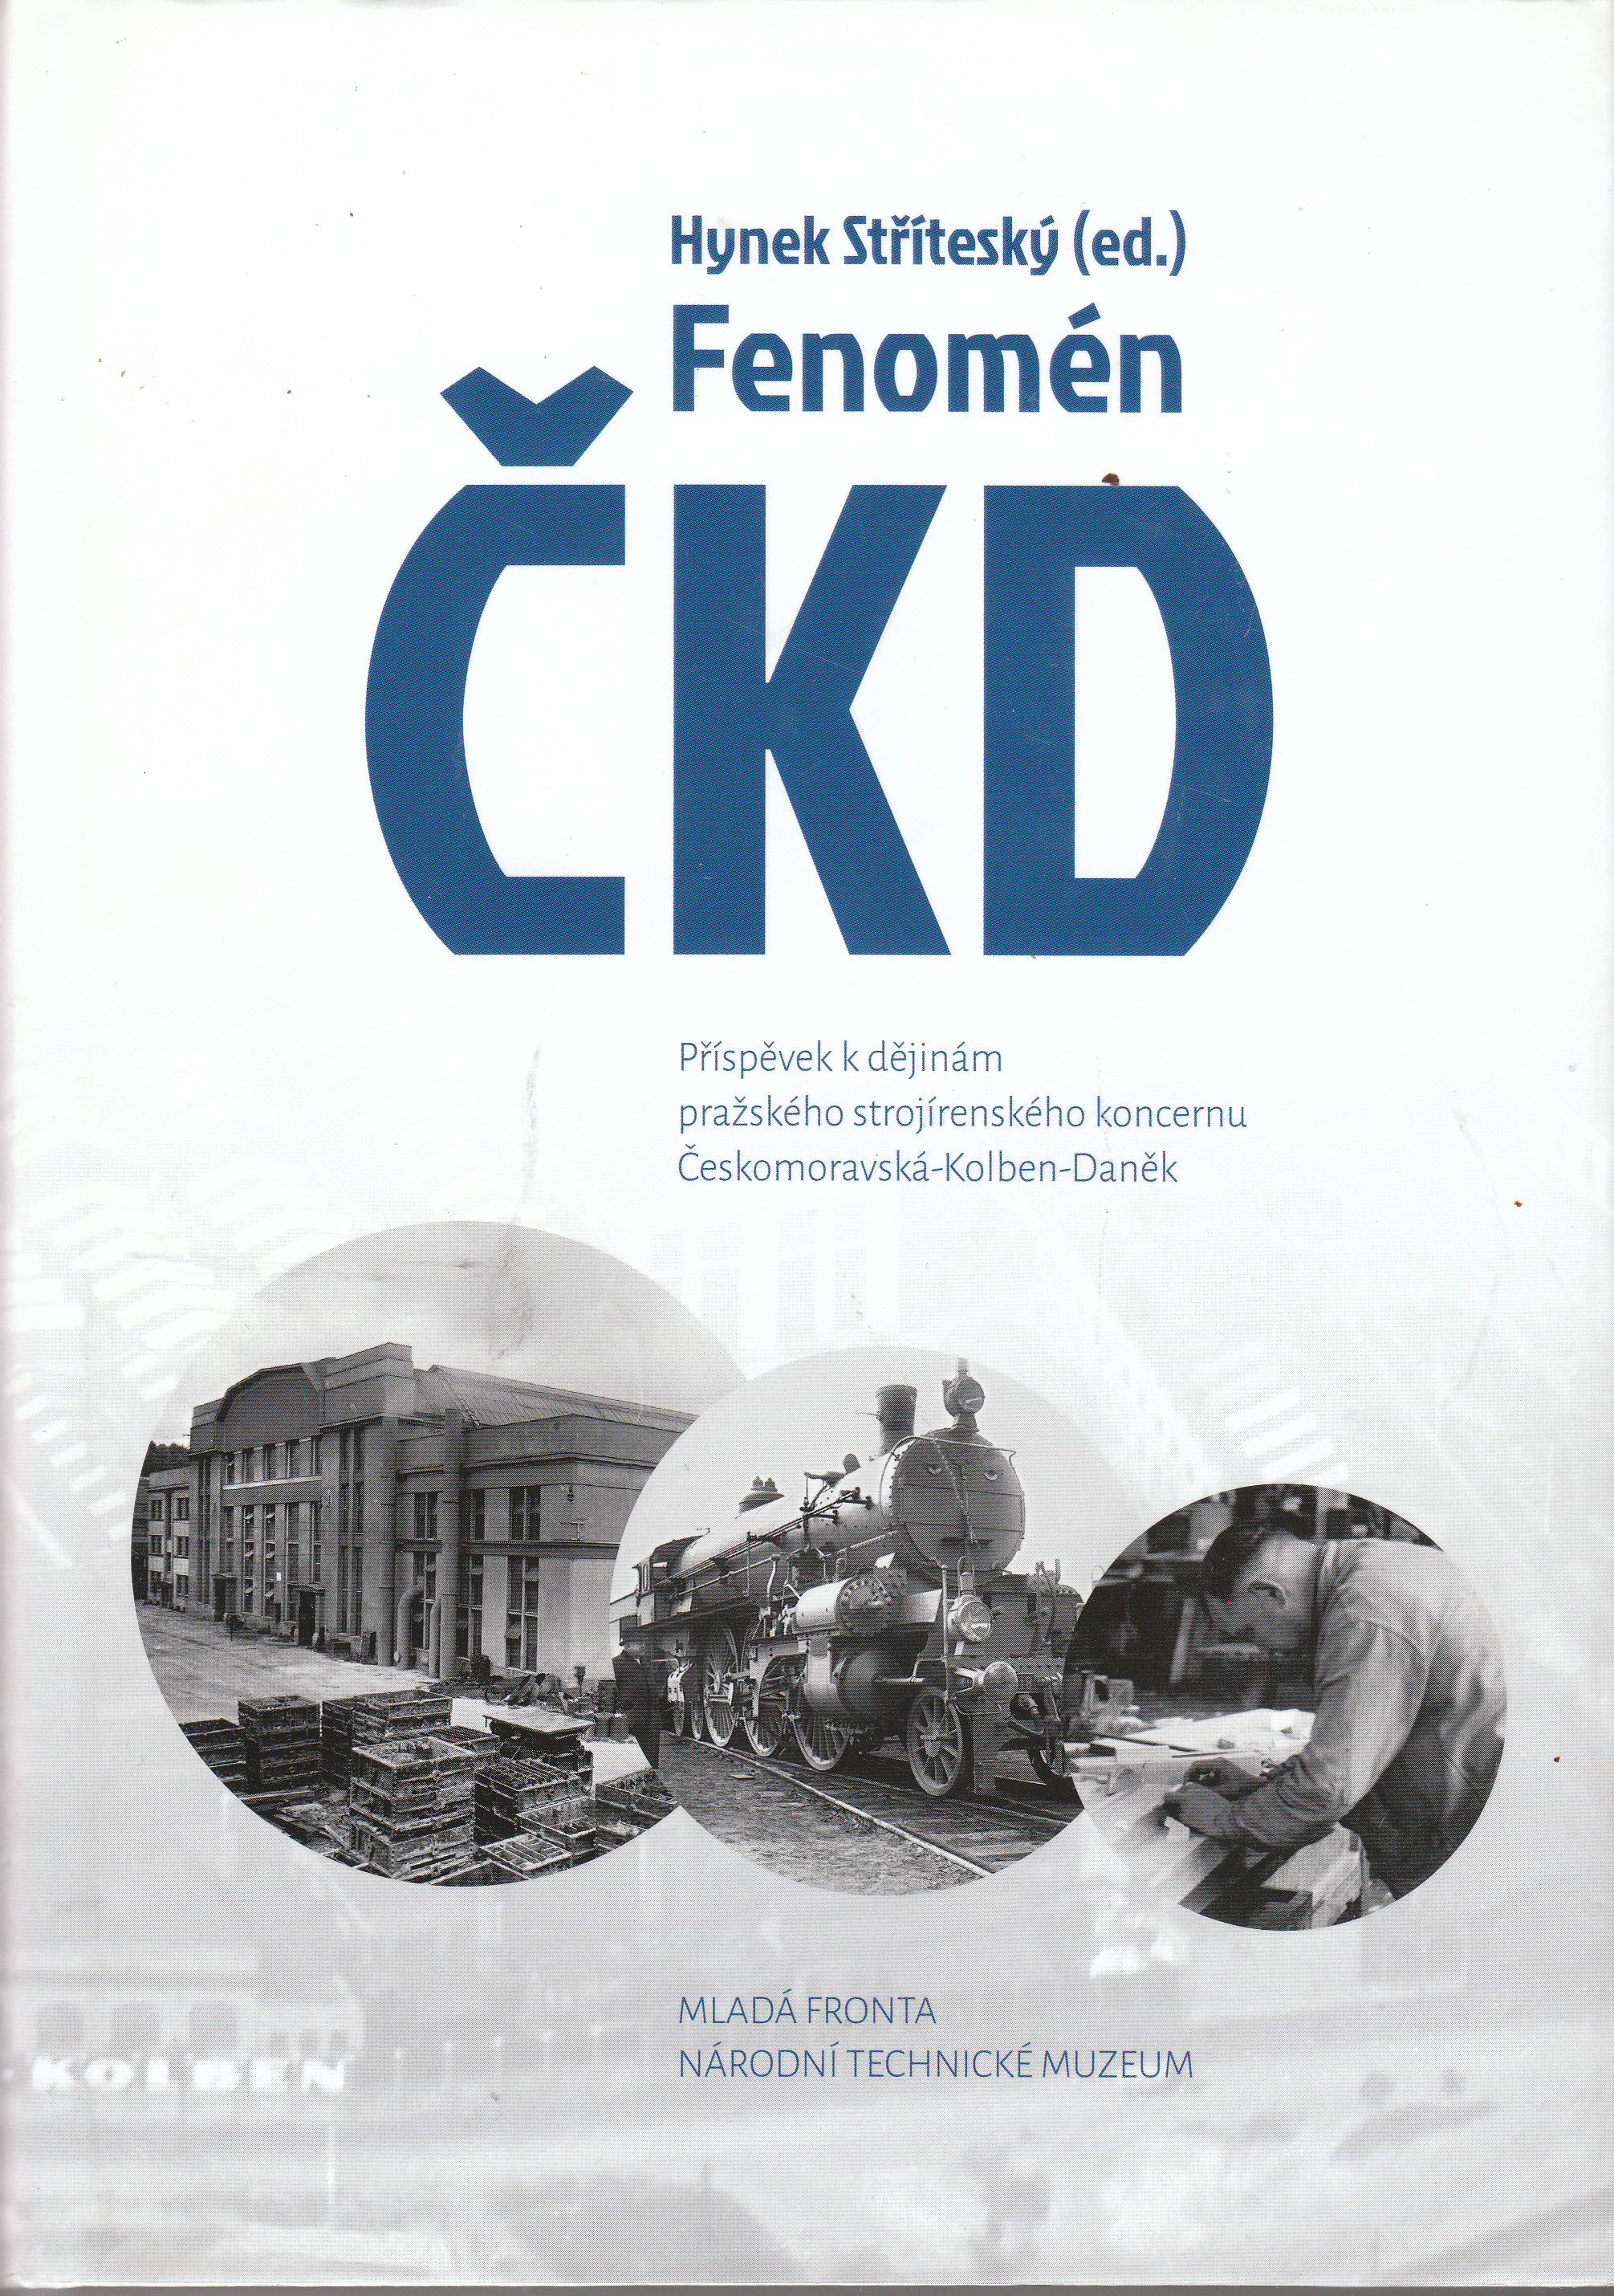 CKD avers 2014